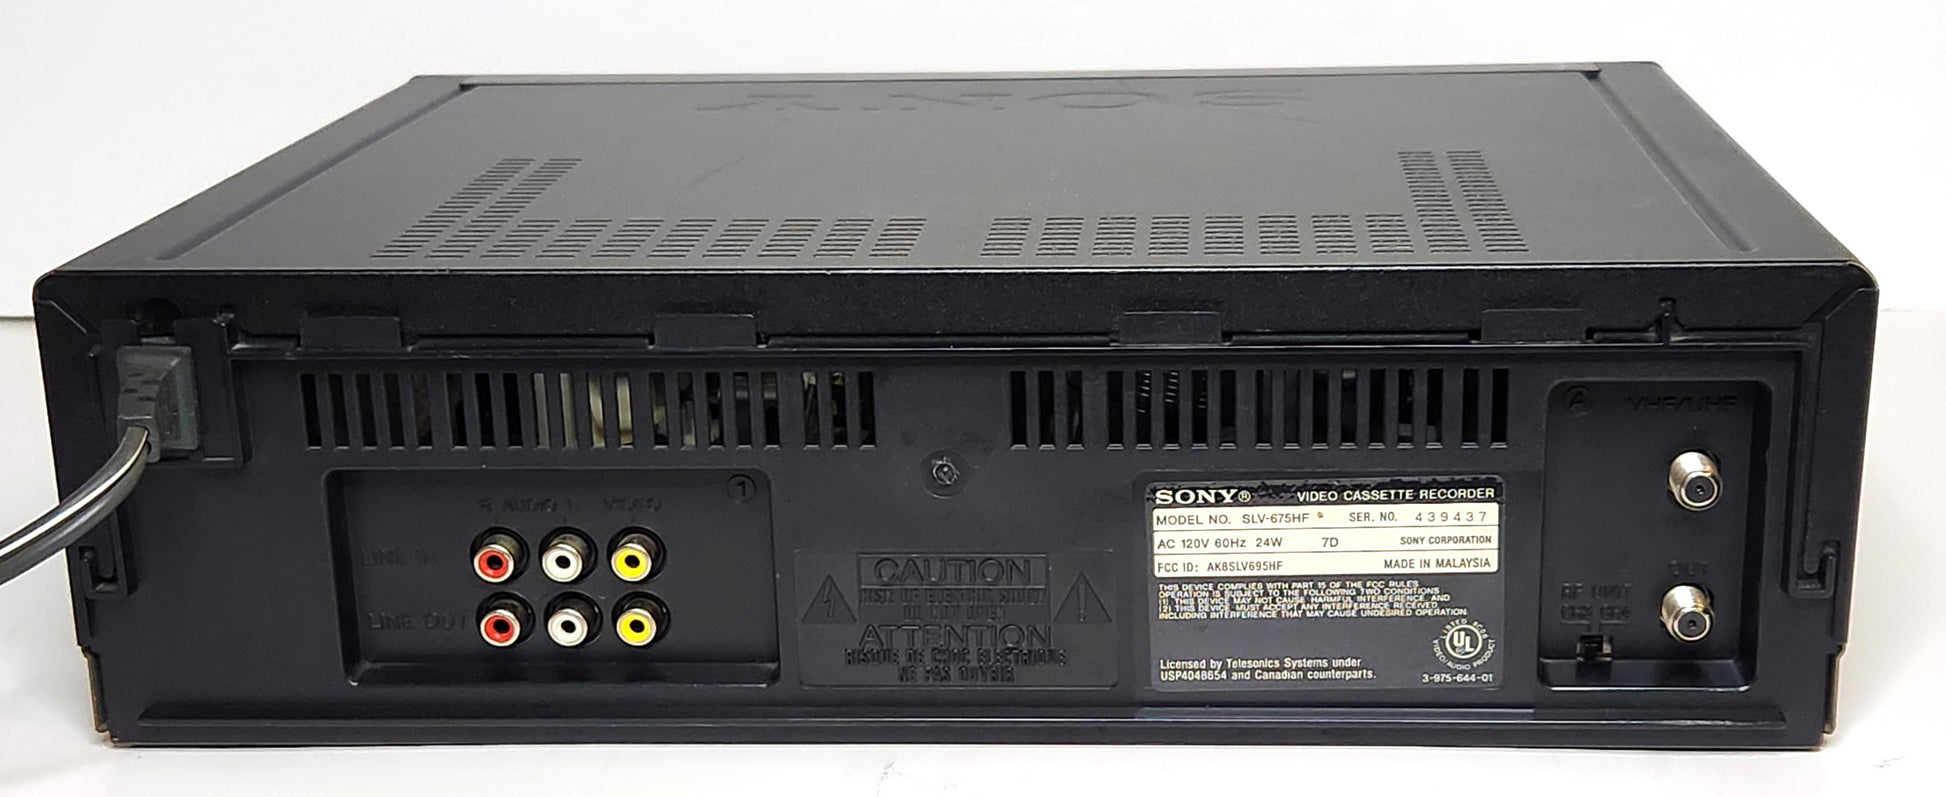 Sony SLV-675HF VCR, 4-Head Hi-Fi Stereo - Rear